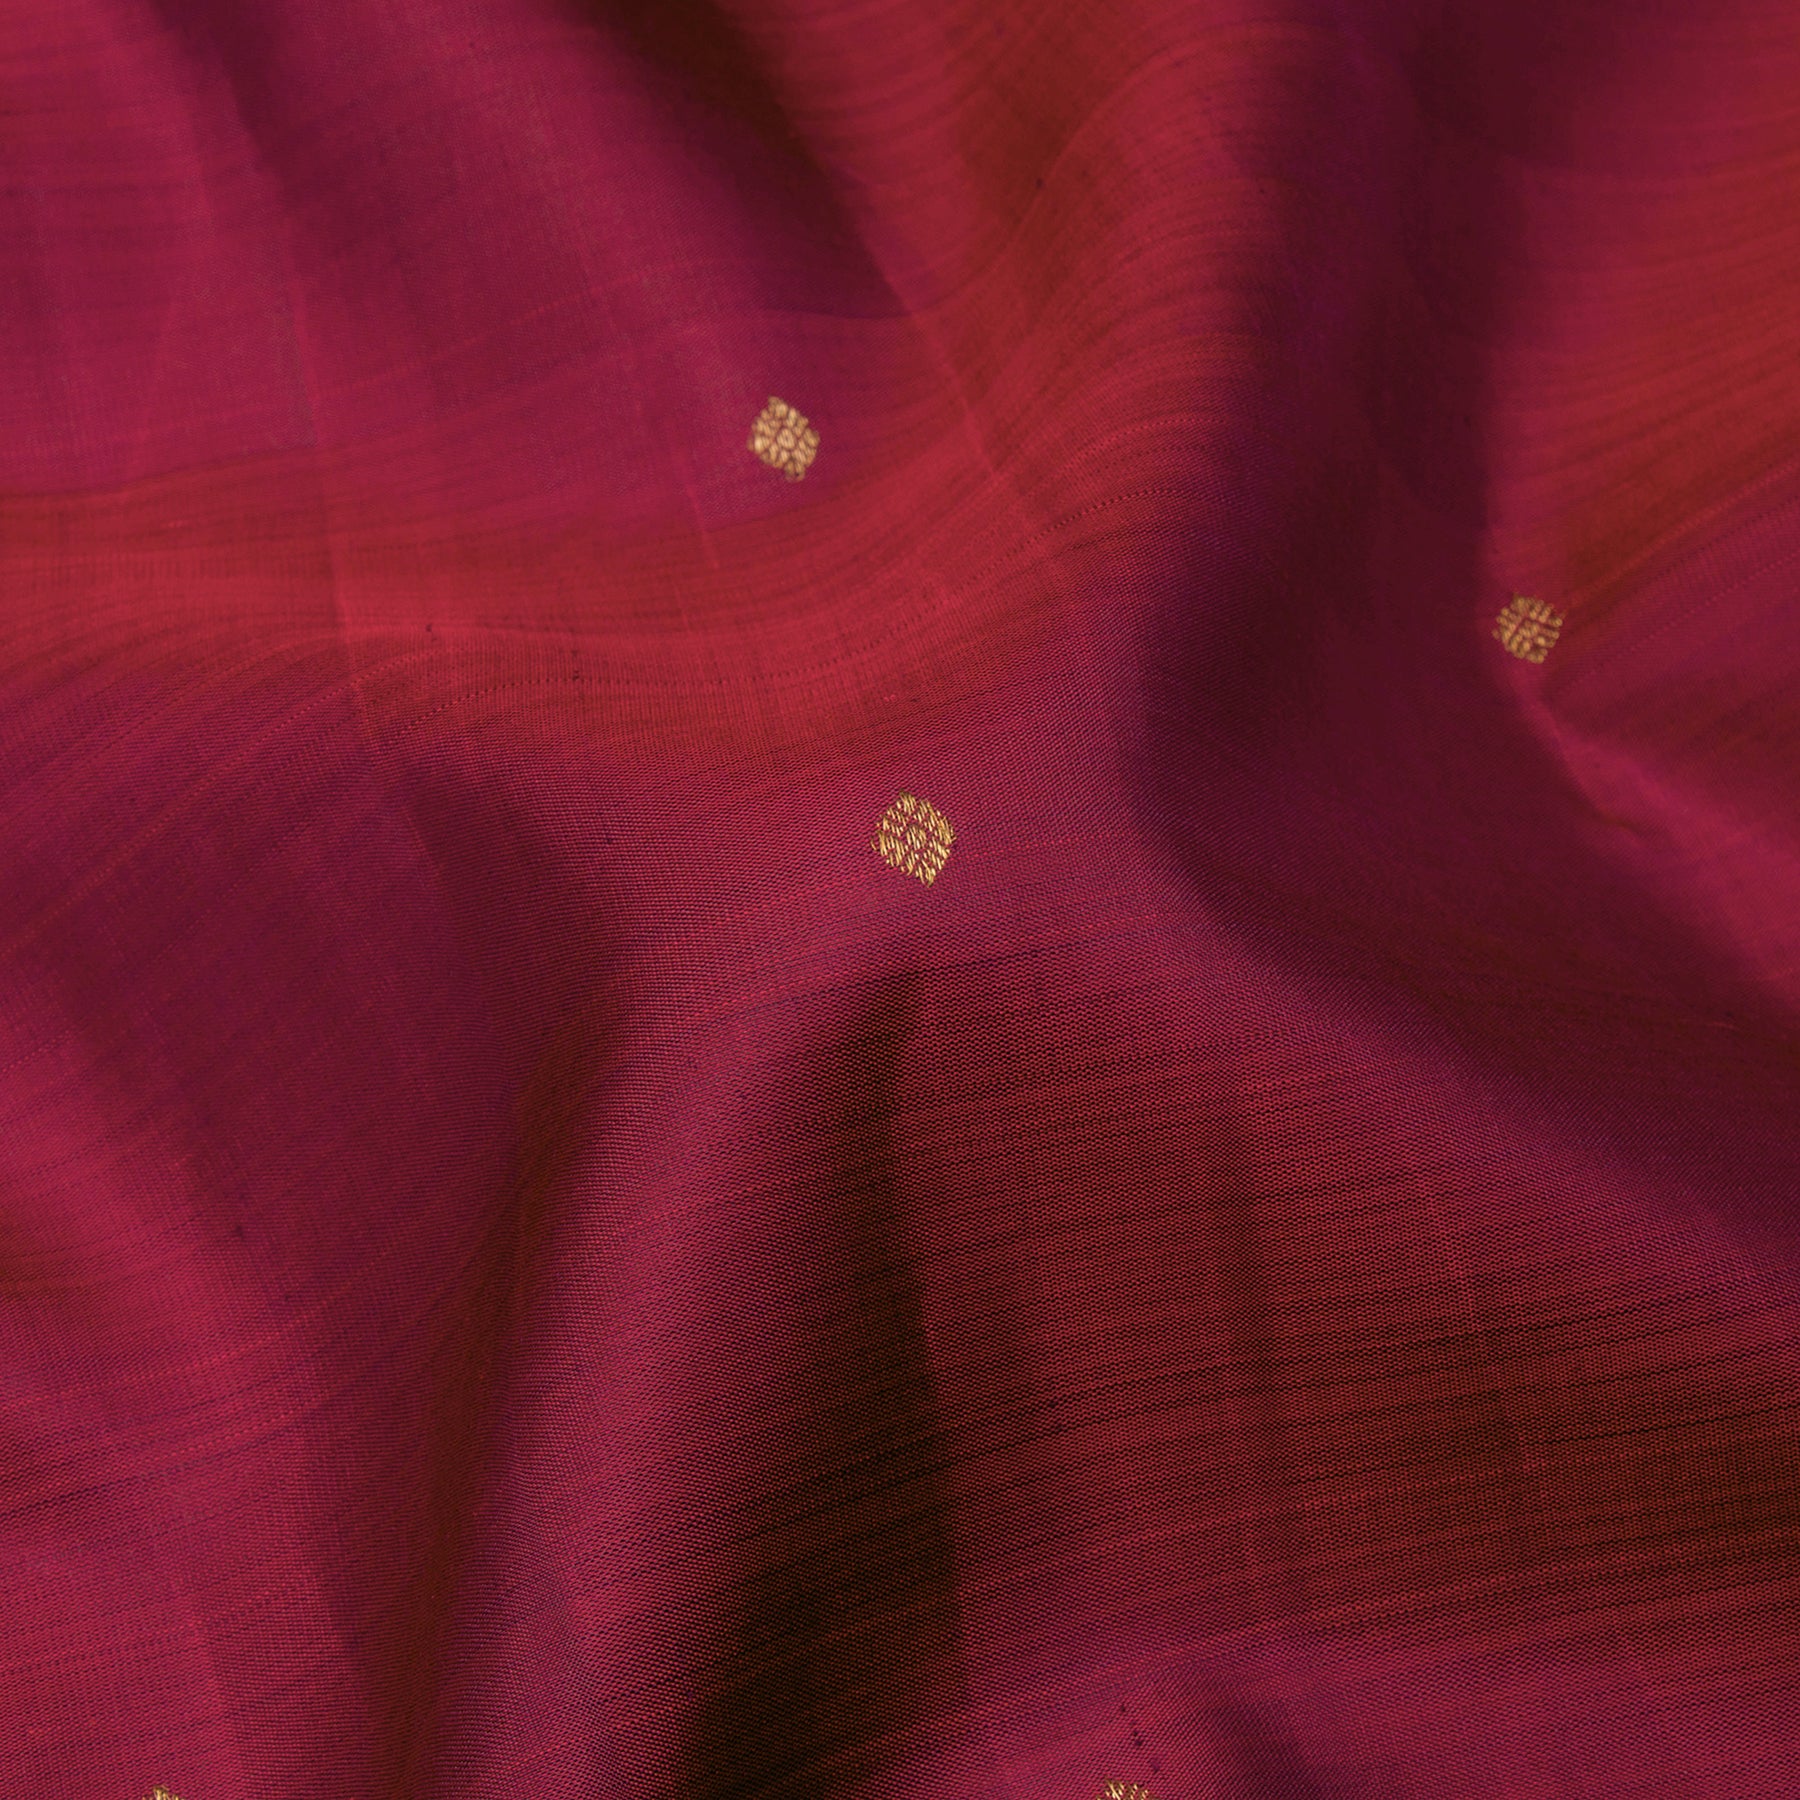 Kanakavalli Kanjivaram Silk Sari 23-611-HS001-13334 - Fabric View